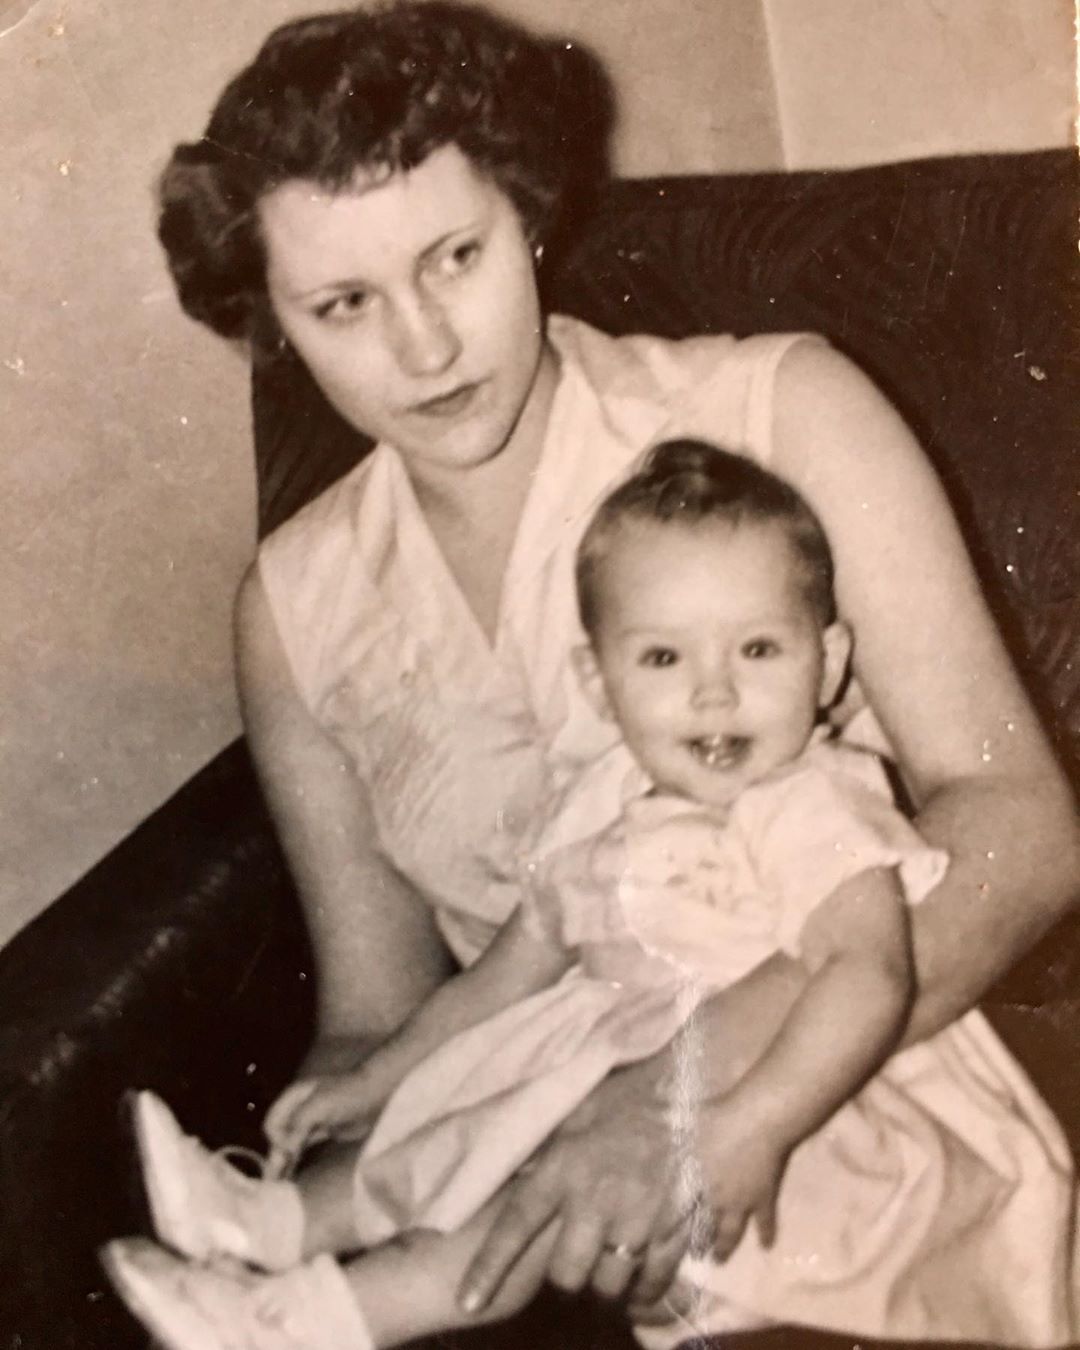 Το μωρό της φωτογραφίας είναι διάσημη σταρ του Χόλλυγουντ, μαζί με την μητέρα της!